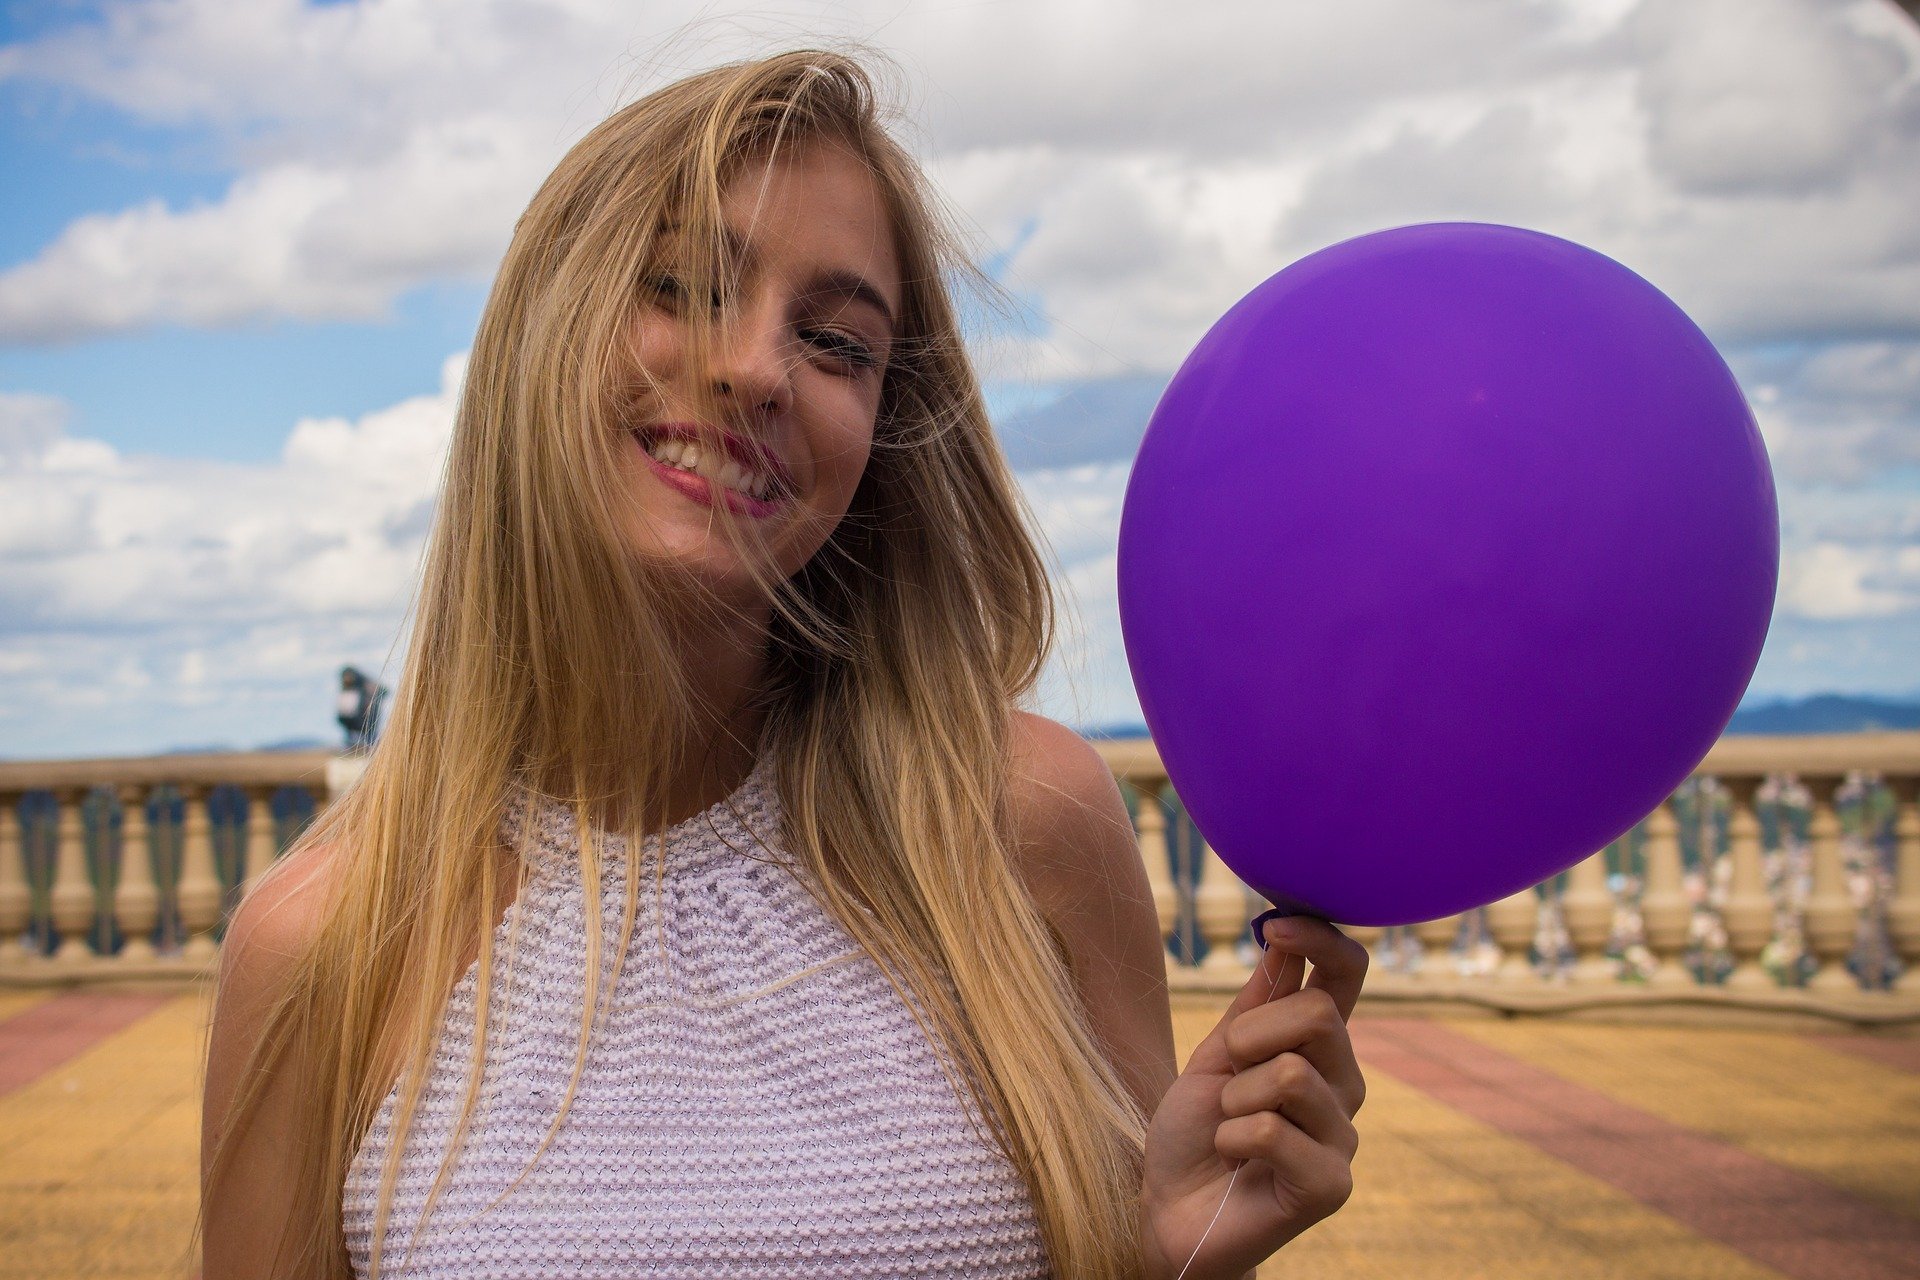 Mulher segurando balão roxo enquanto sorri